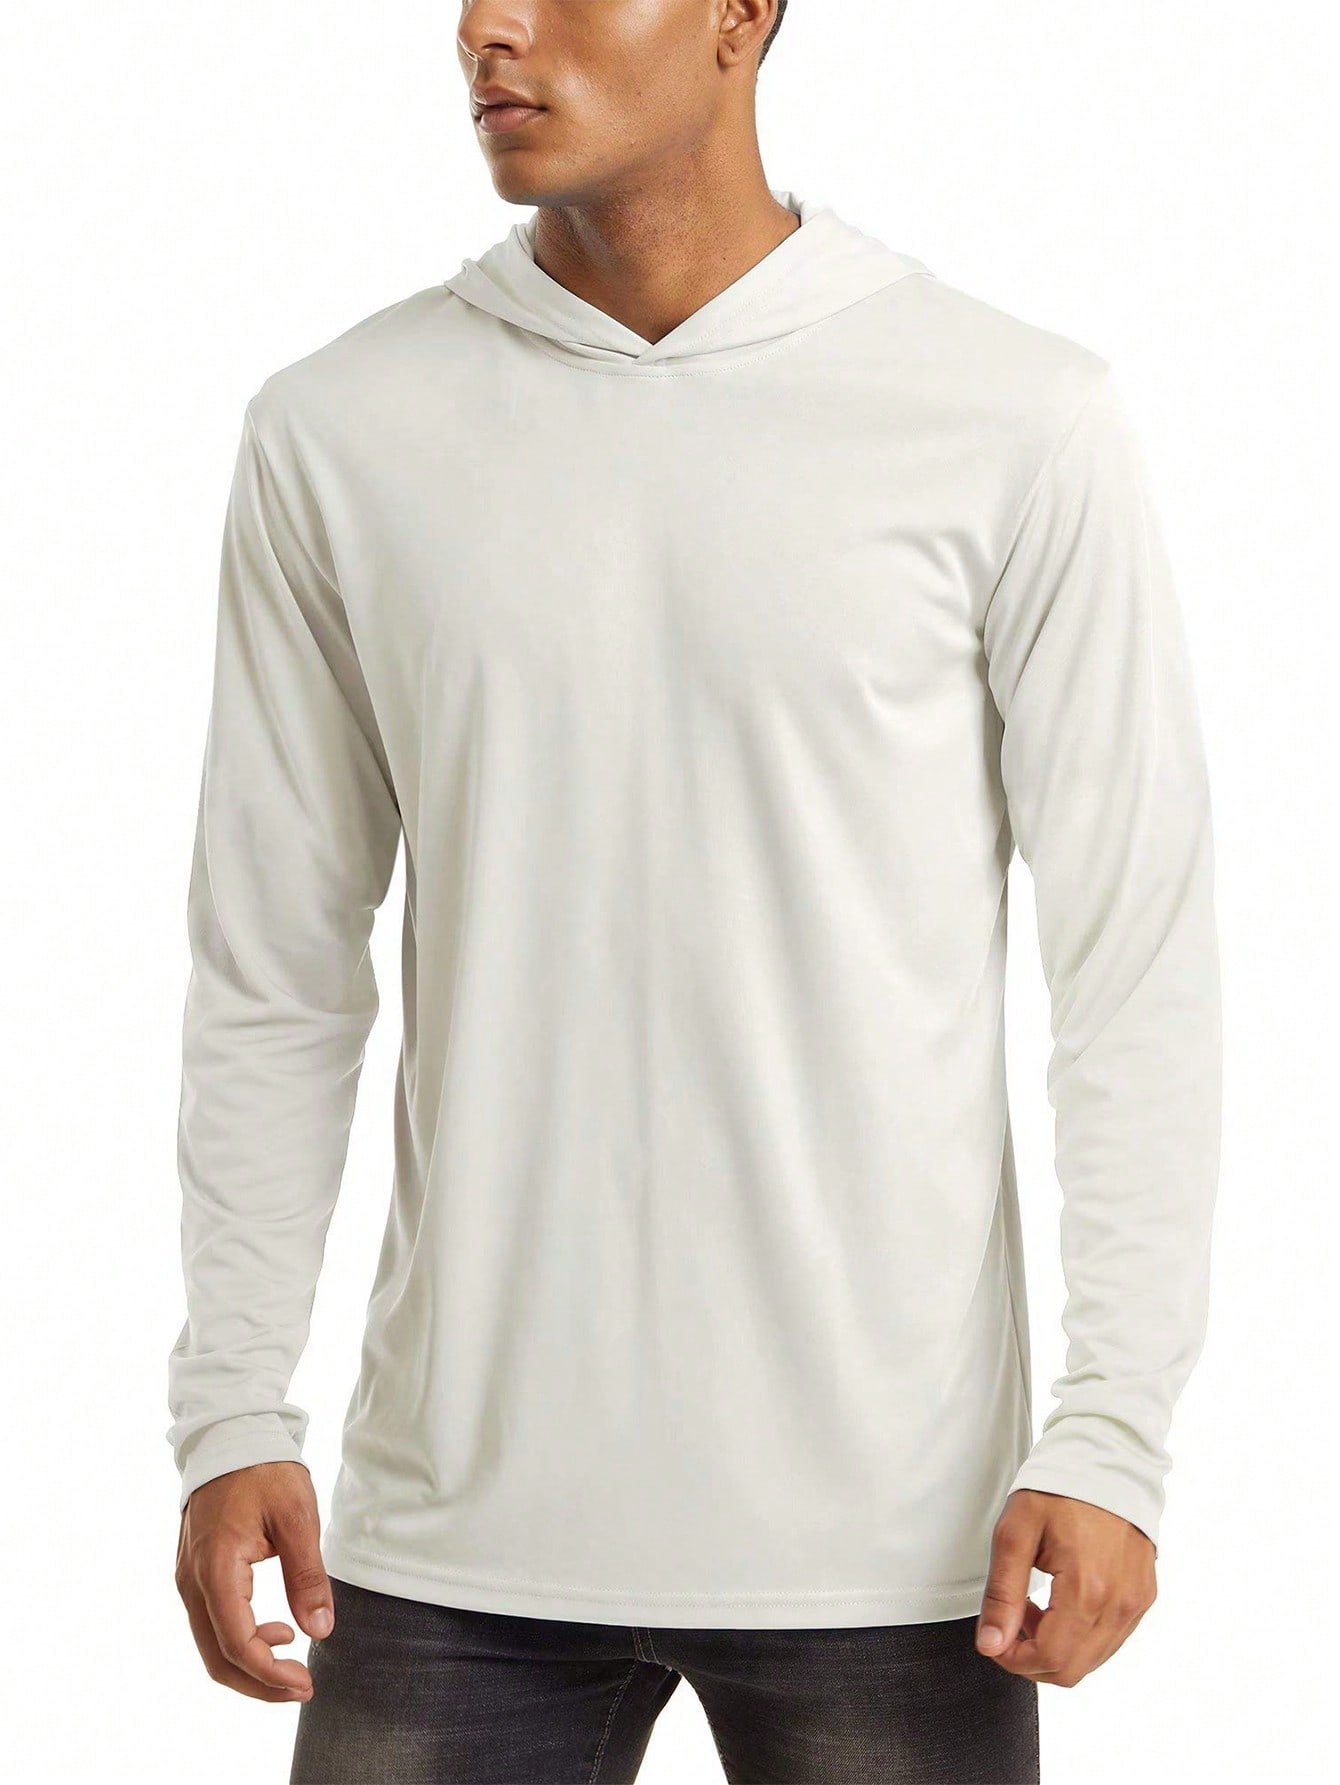 цена NASBING Мужская быстросохнущая спортивная футболка с капюшоном, белый